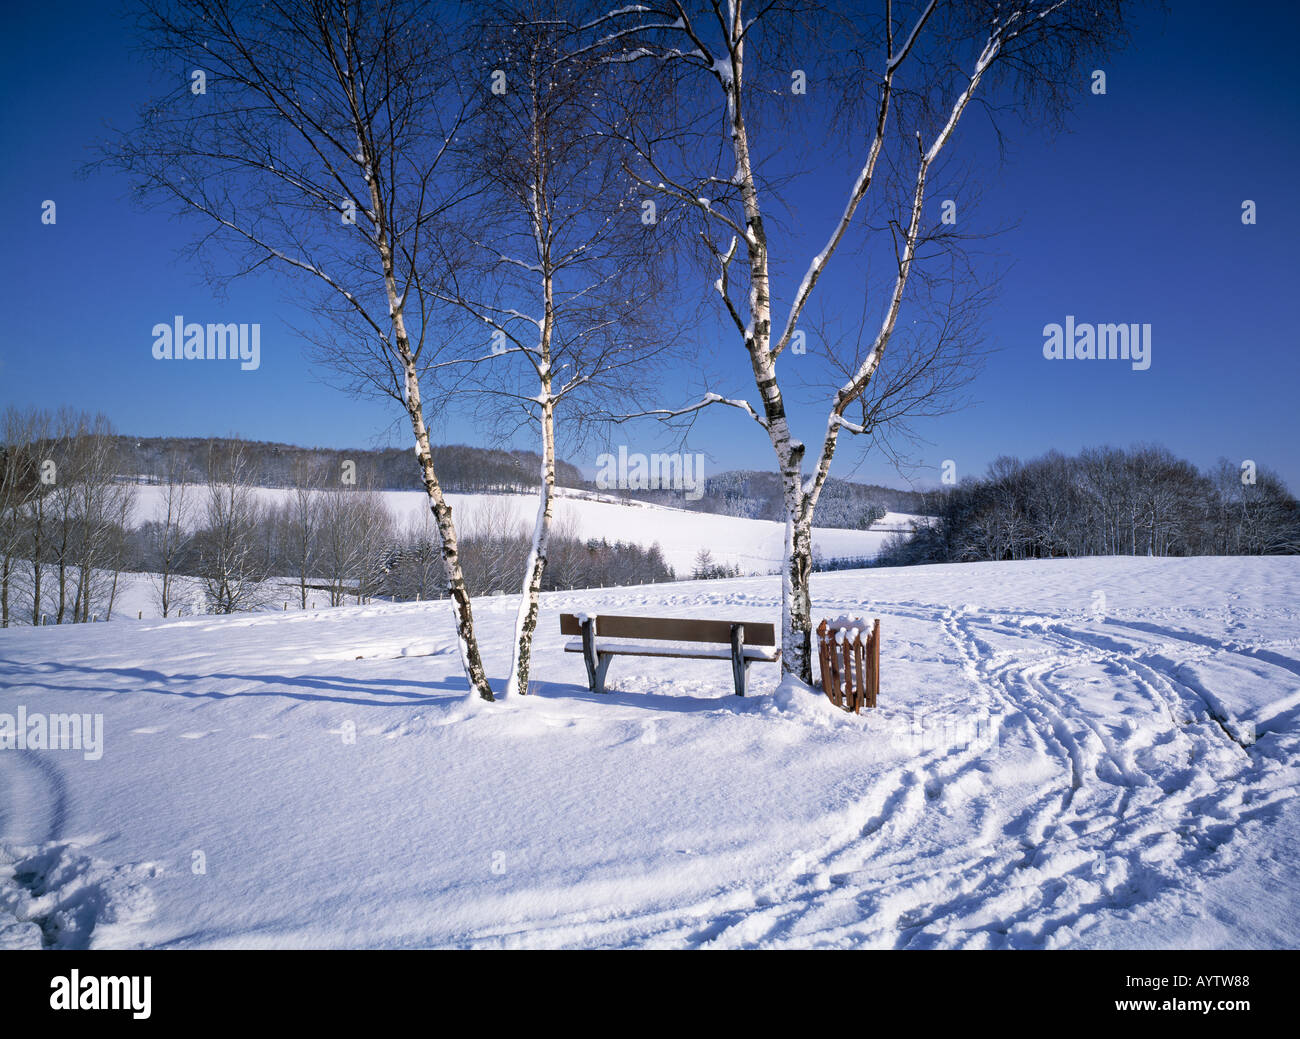 Winterlandschaft, verschneite Landschaft, Banca mit Birken im Schnee, Spuren im Schnee, Wiehl-Marienhagen, Naturpark Bergisches Land, Nordrhein-Westfal Foto Stock